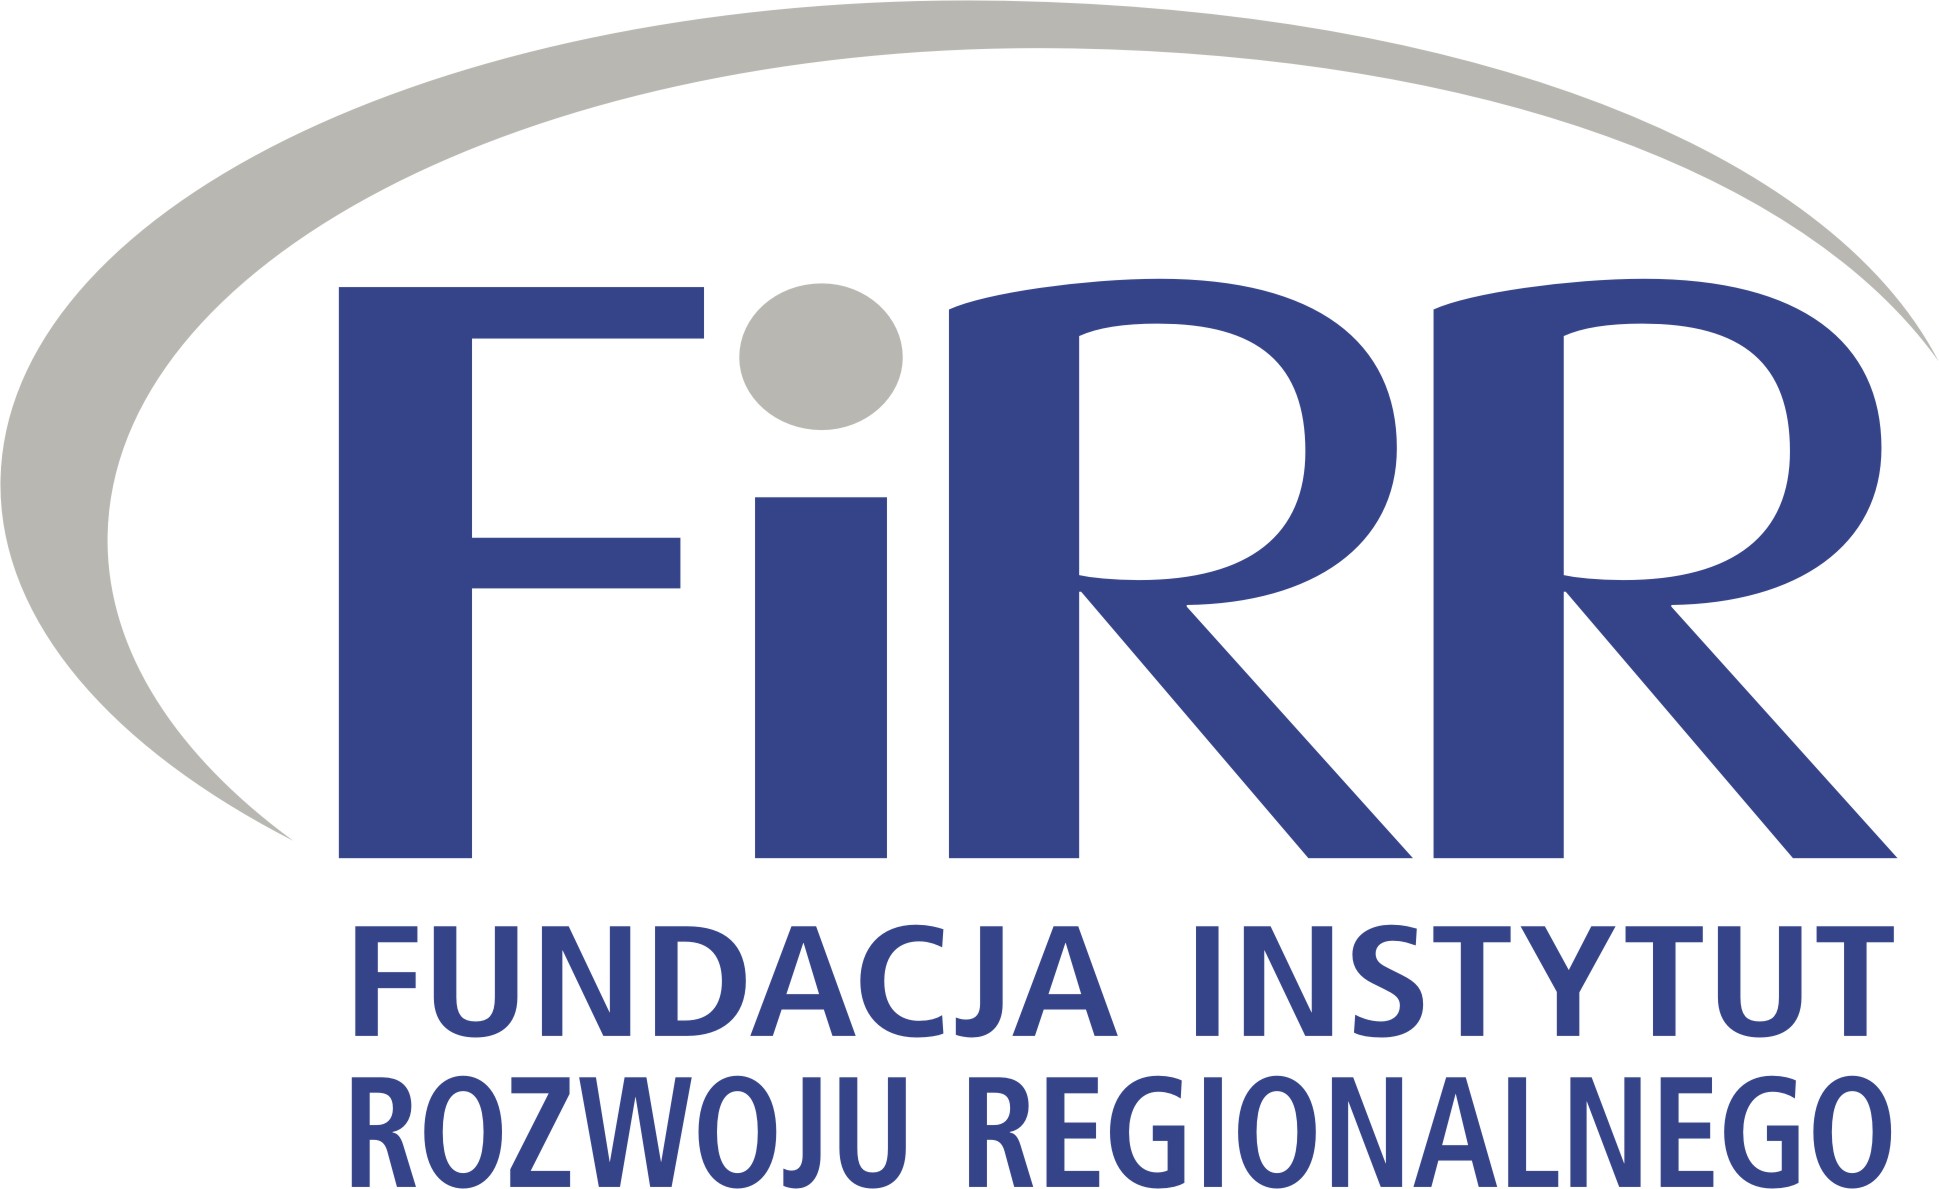 Logo FIRR - Fundacja Instytut Rozwoju Regionalnego - znak graficzny składający się z literowego zapisu słowa FIRR, po lewej stronie od litery F znajduje się półkole oplatające znak. Pod literami FIRR znajduje się pełna nazwa fundacji.